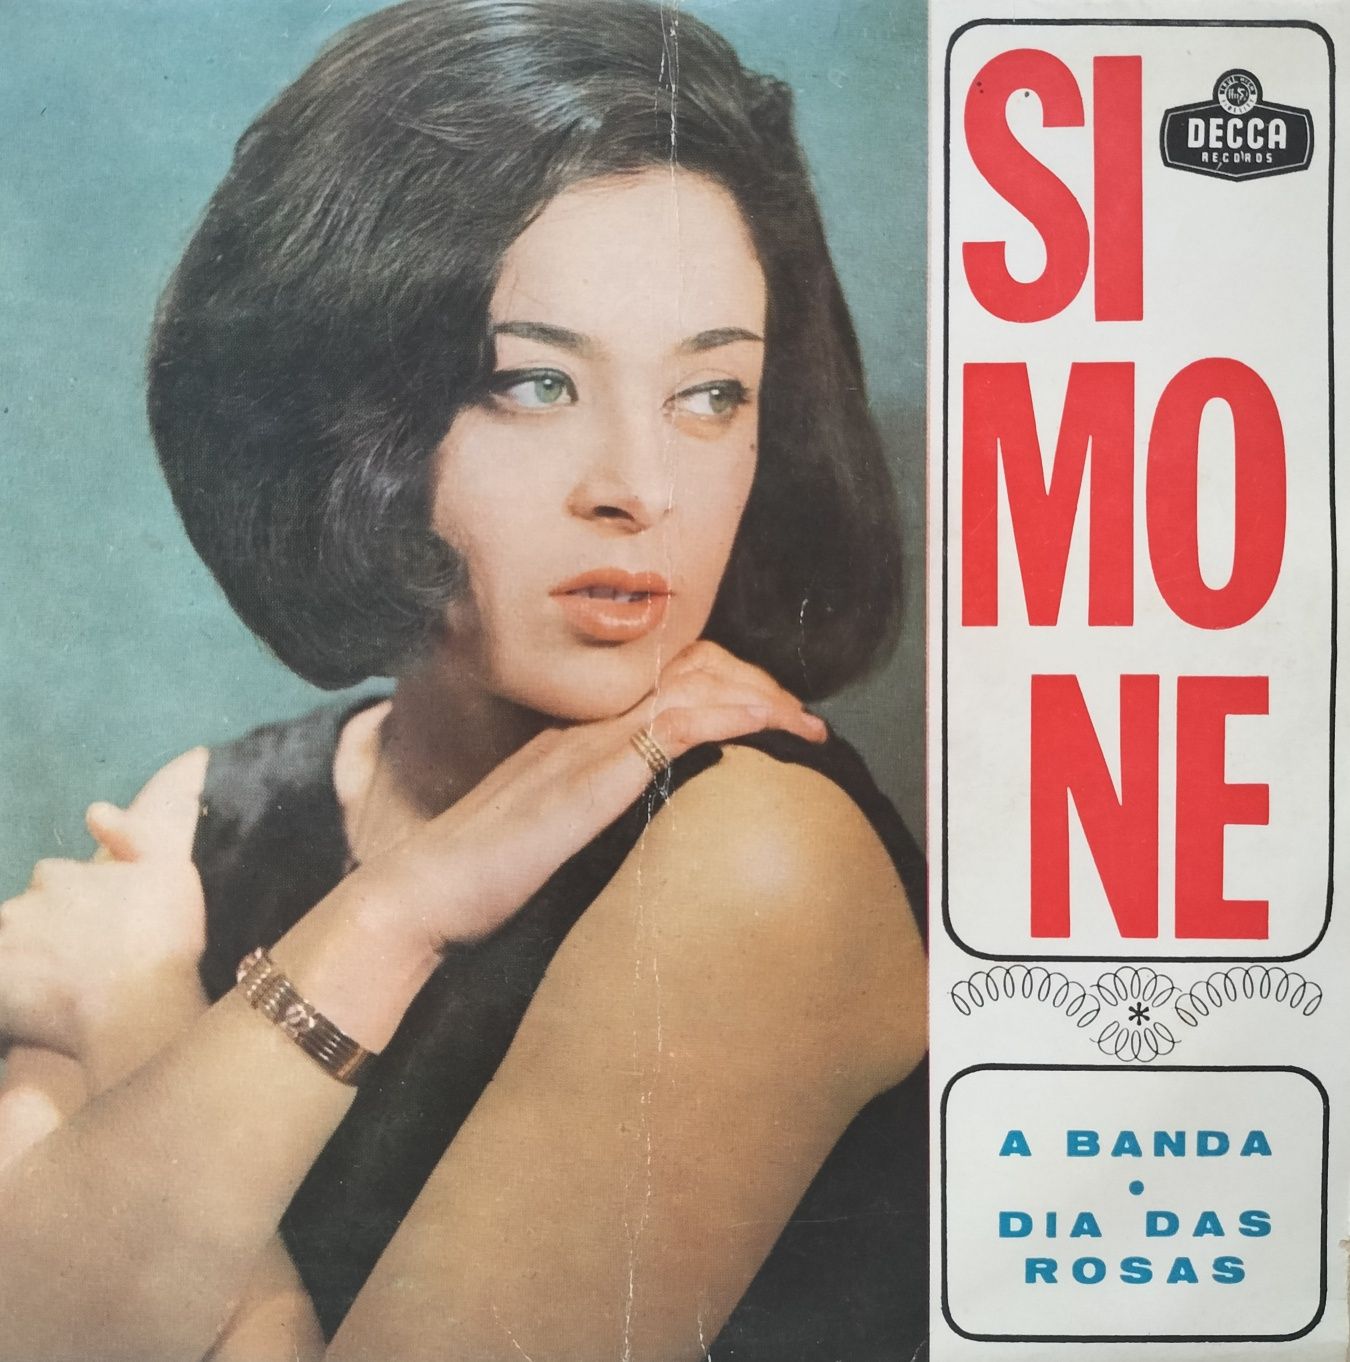 SIMONE de Oliveira - discos anos 60